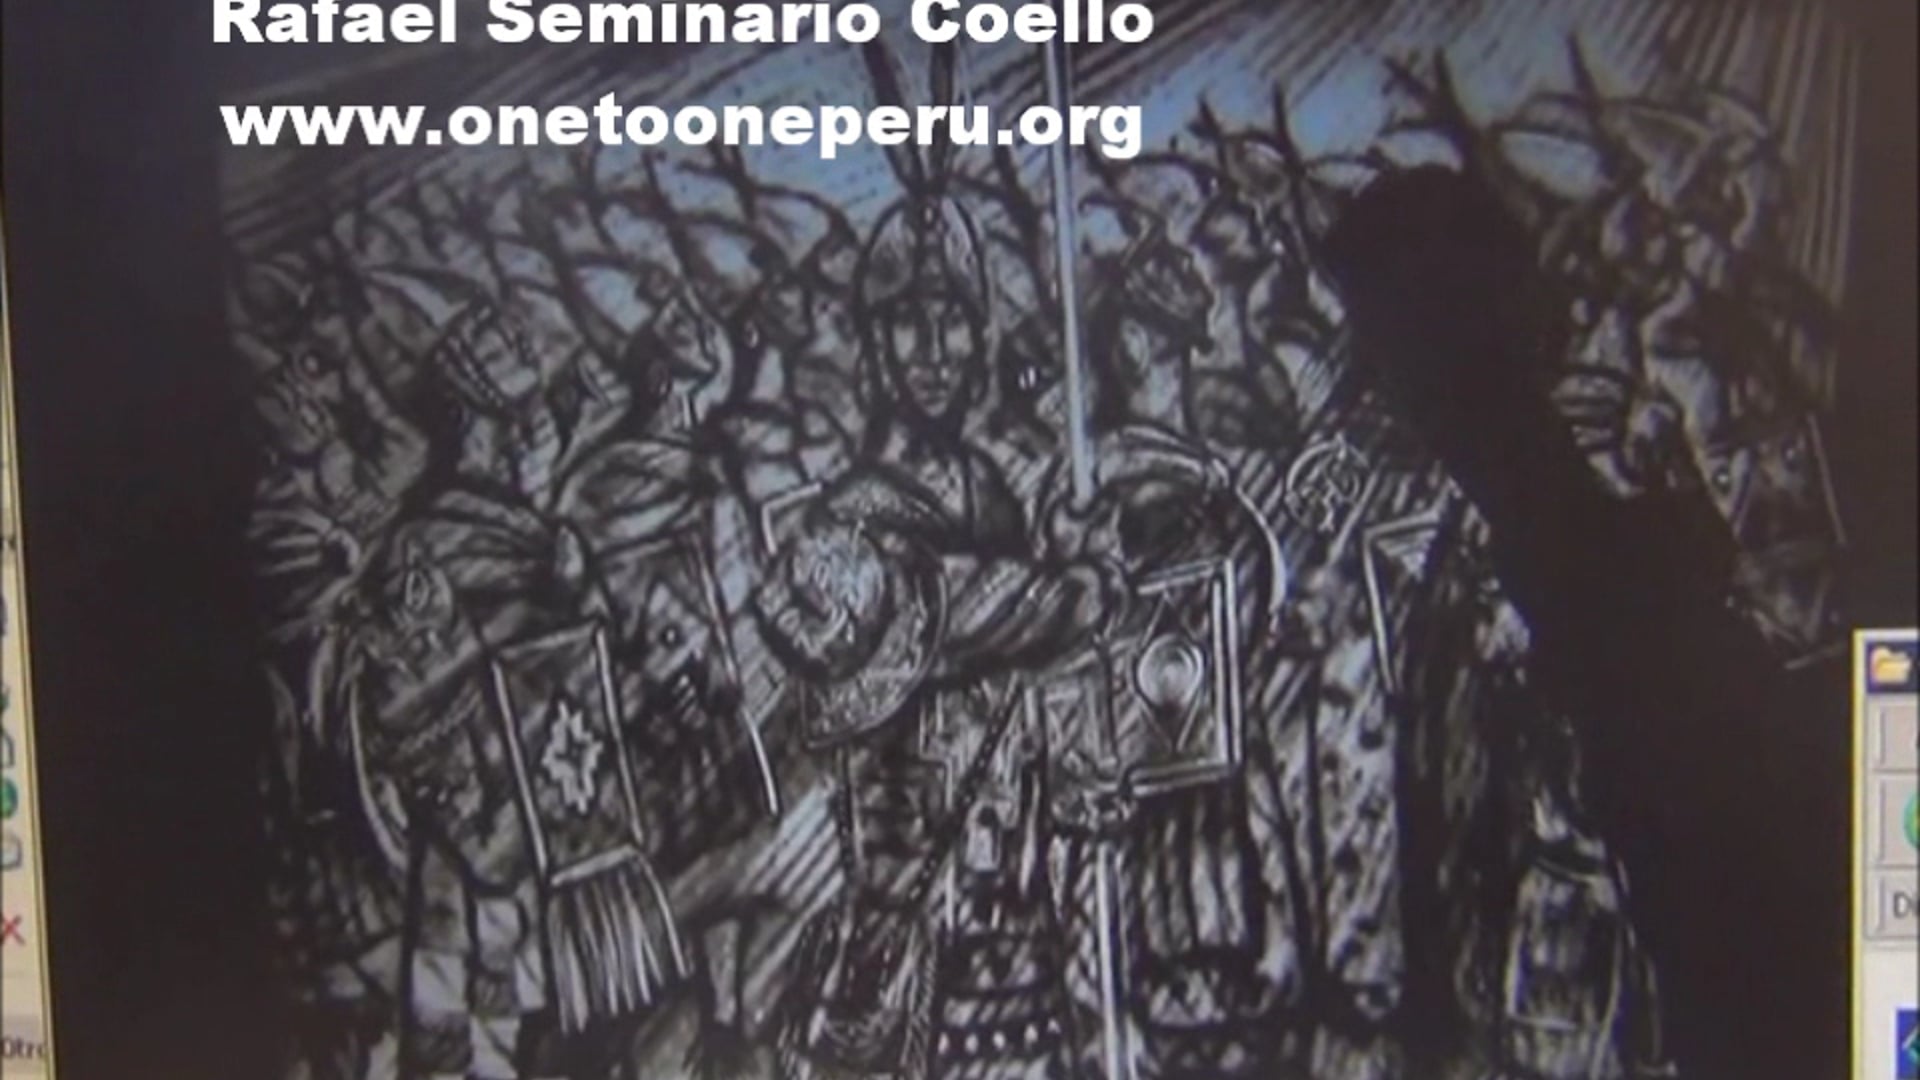 Rafael Seminario coello, sand artist, dibujos en gran formato